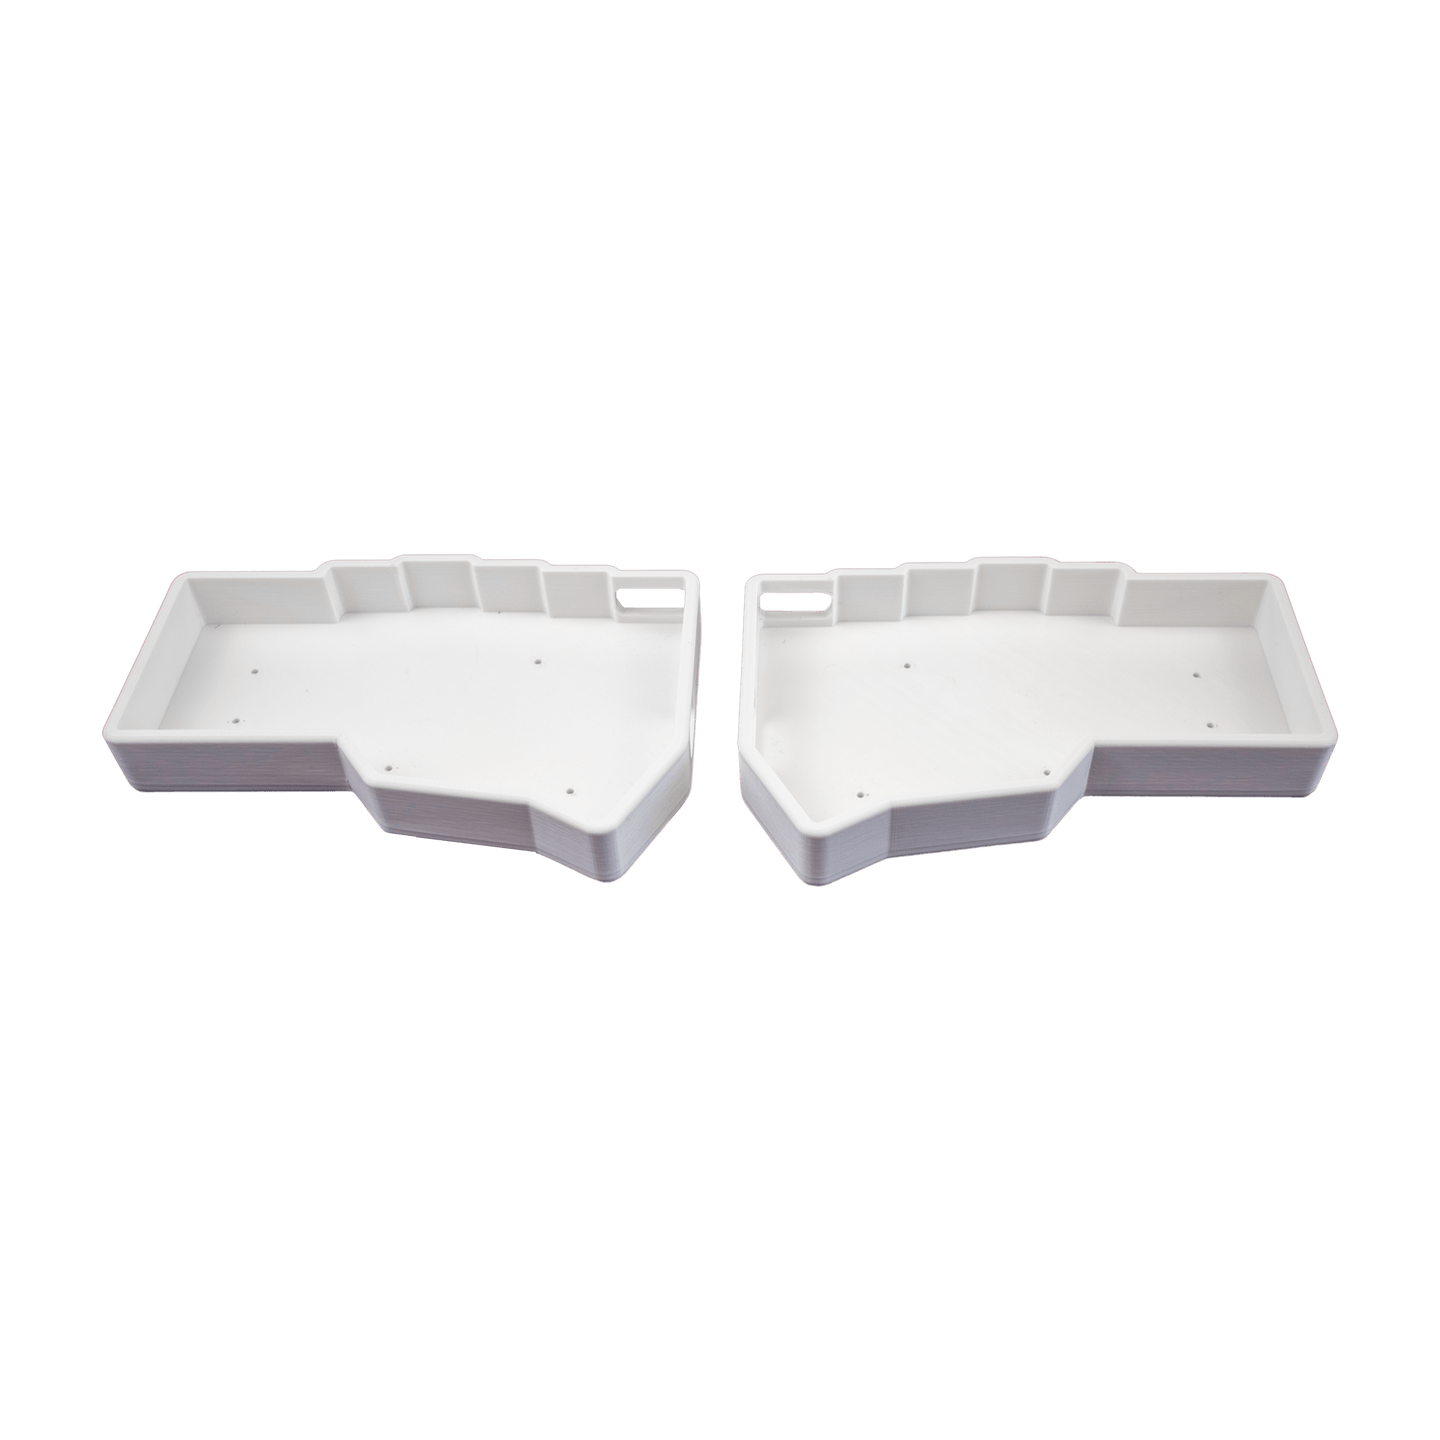 3D Printed Helidox Corne Case White